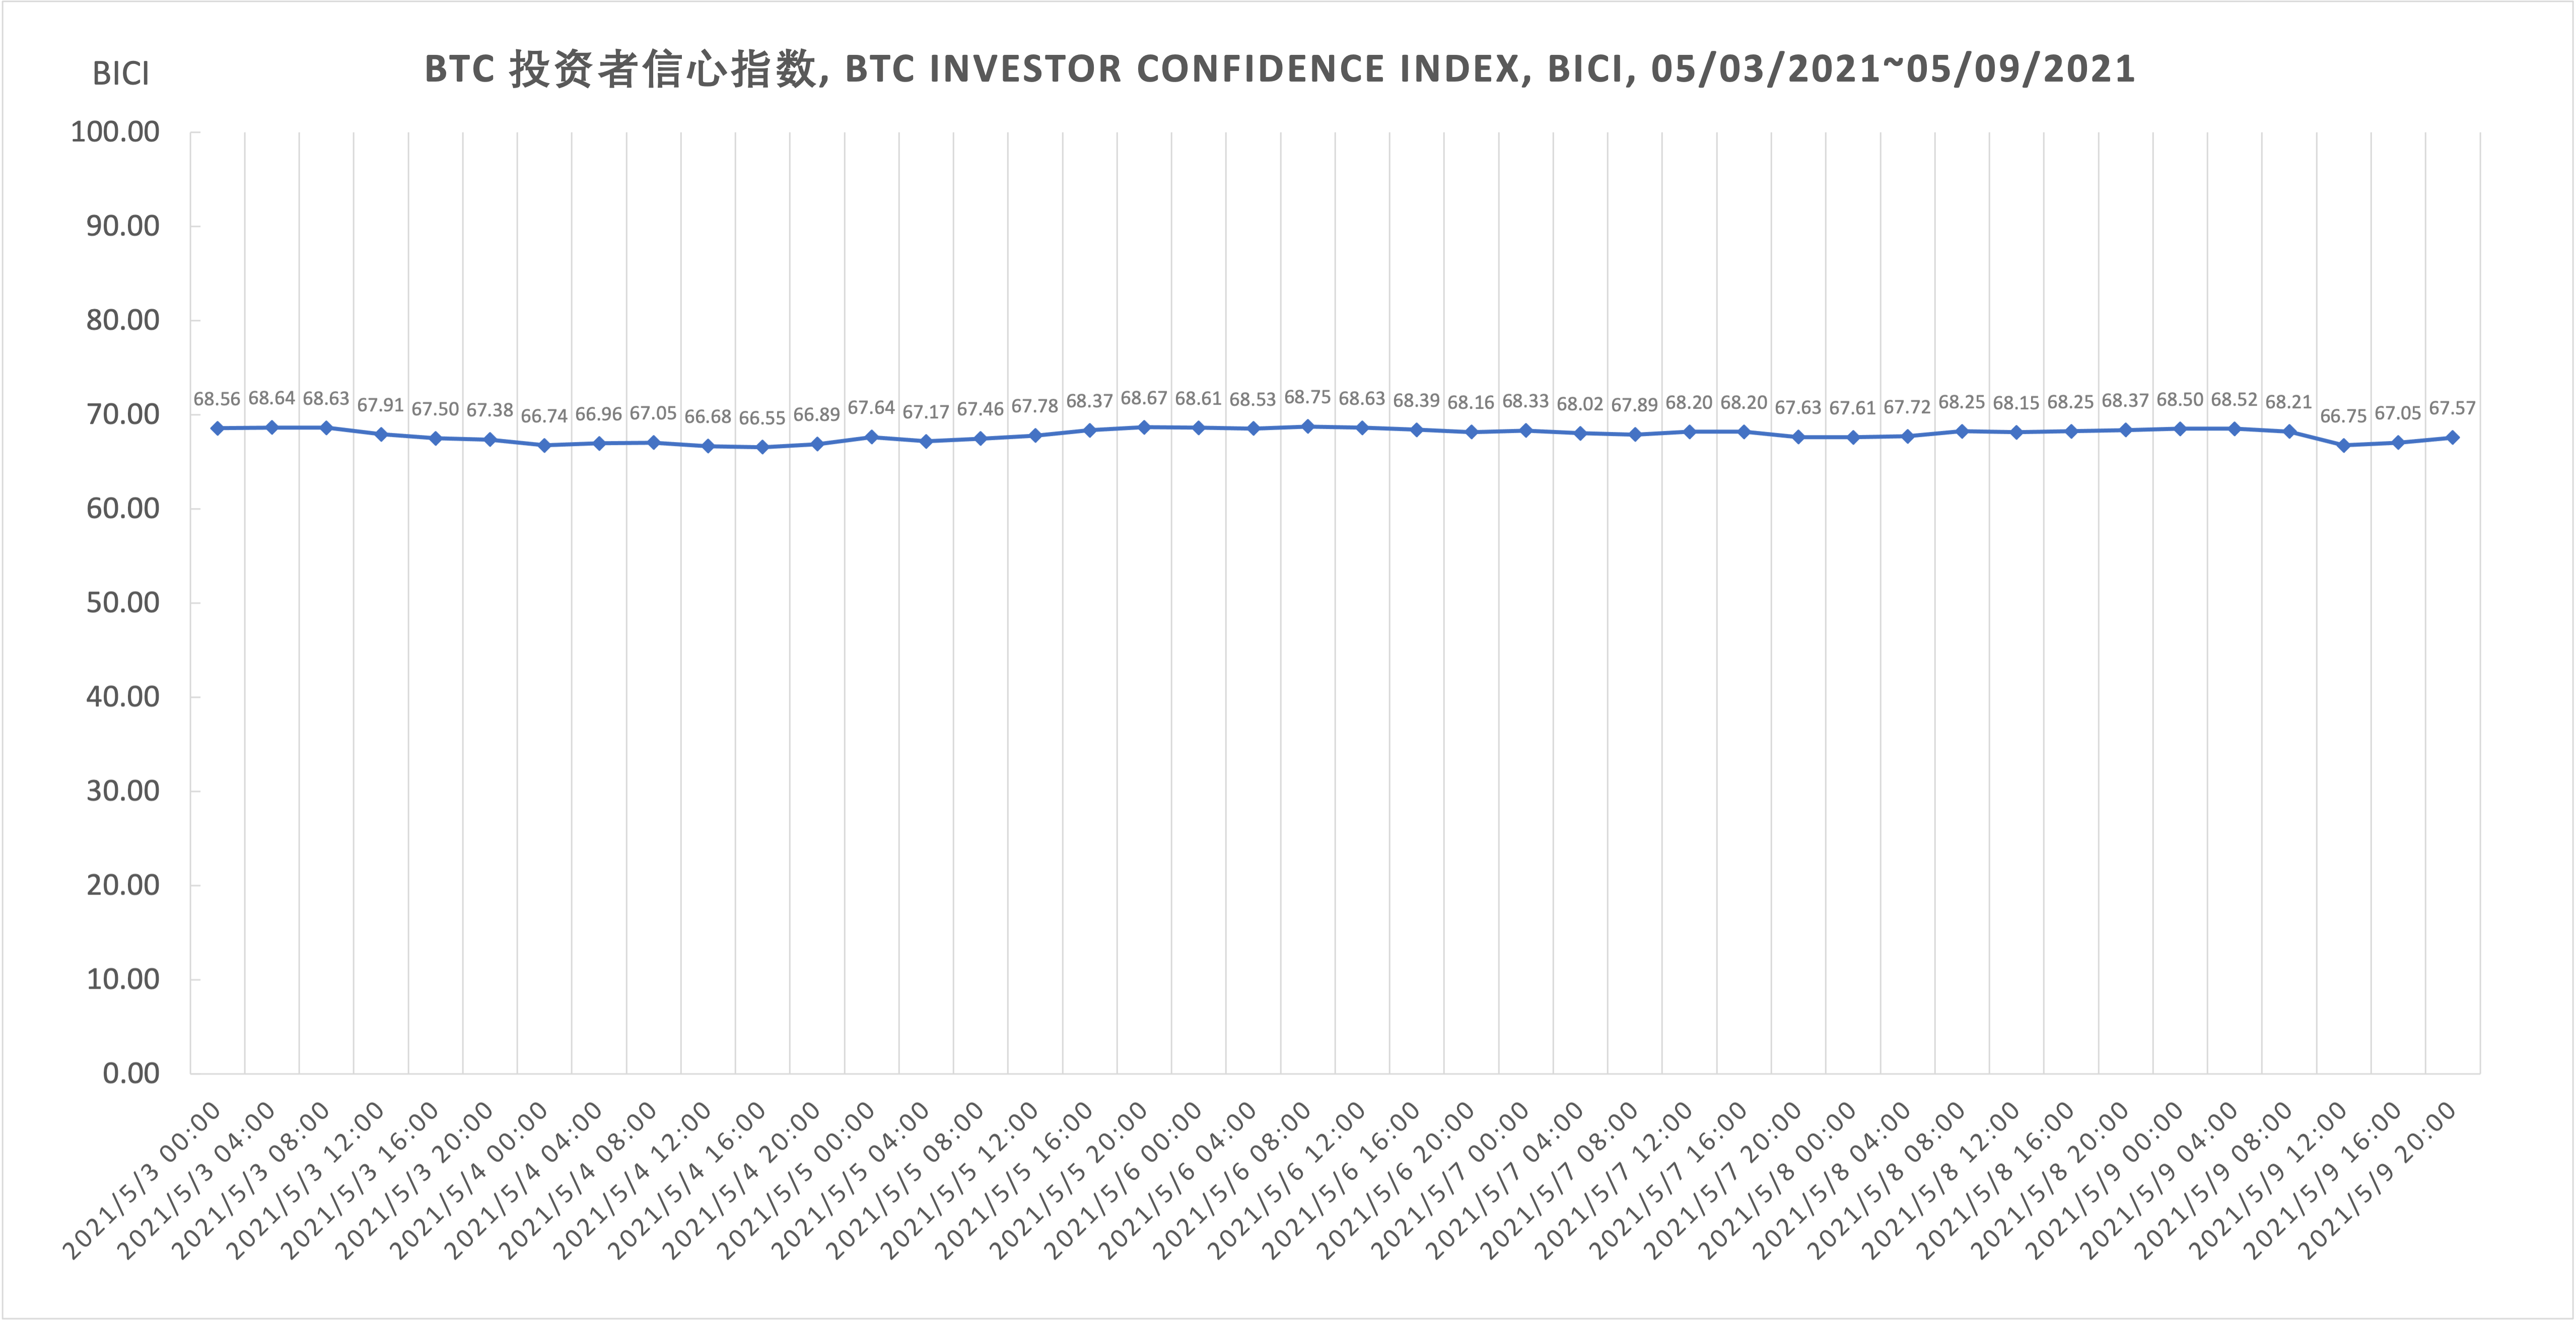 比特币投资者信心指数总体呈现小幅度起伏波动走势 BICI, 5.03-5.09